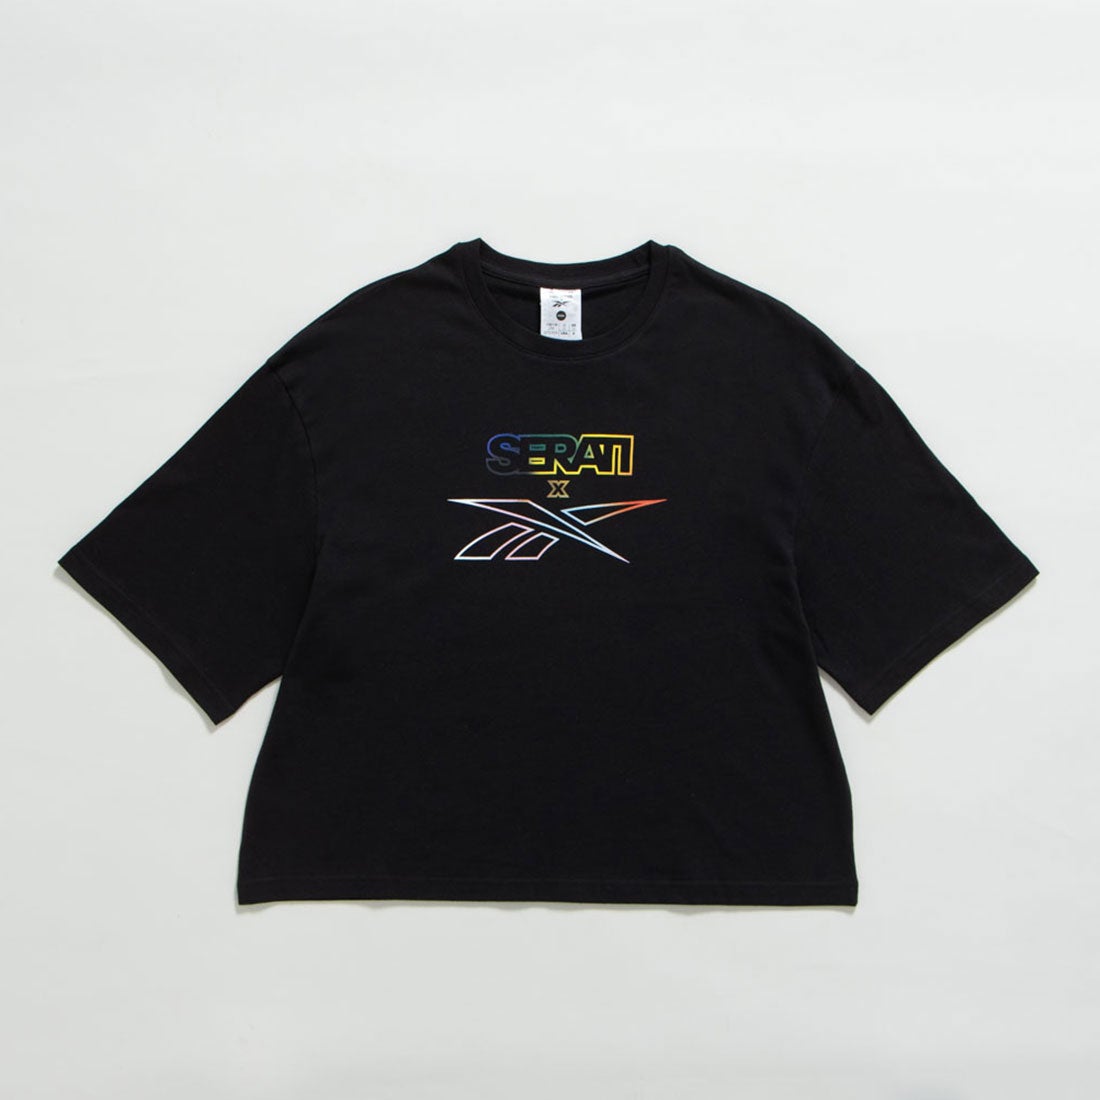 プライド グラフィック Tシャツ / Nao Serati Pride Graphic Tee （ブラック） -Reebok 公式オンラインショップ